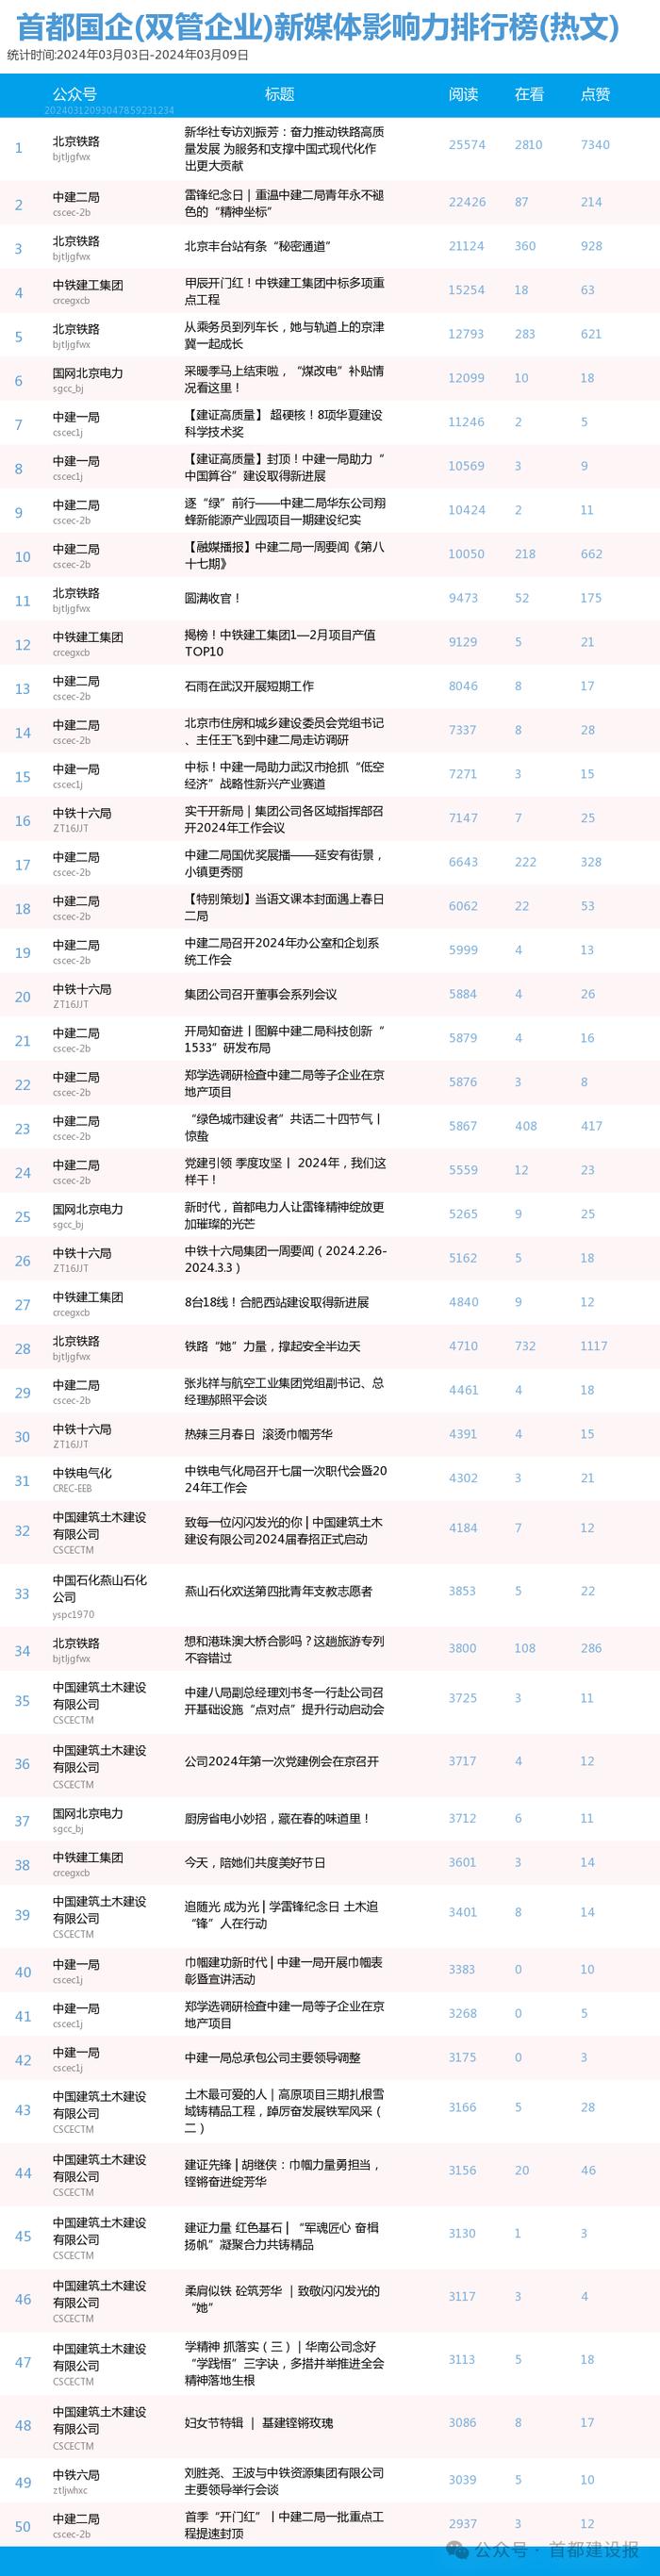 【北京国企新媒体影响力排行榜】3月周榜(3.3-3.9)第398期